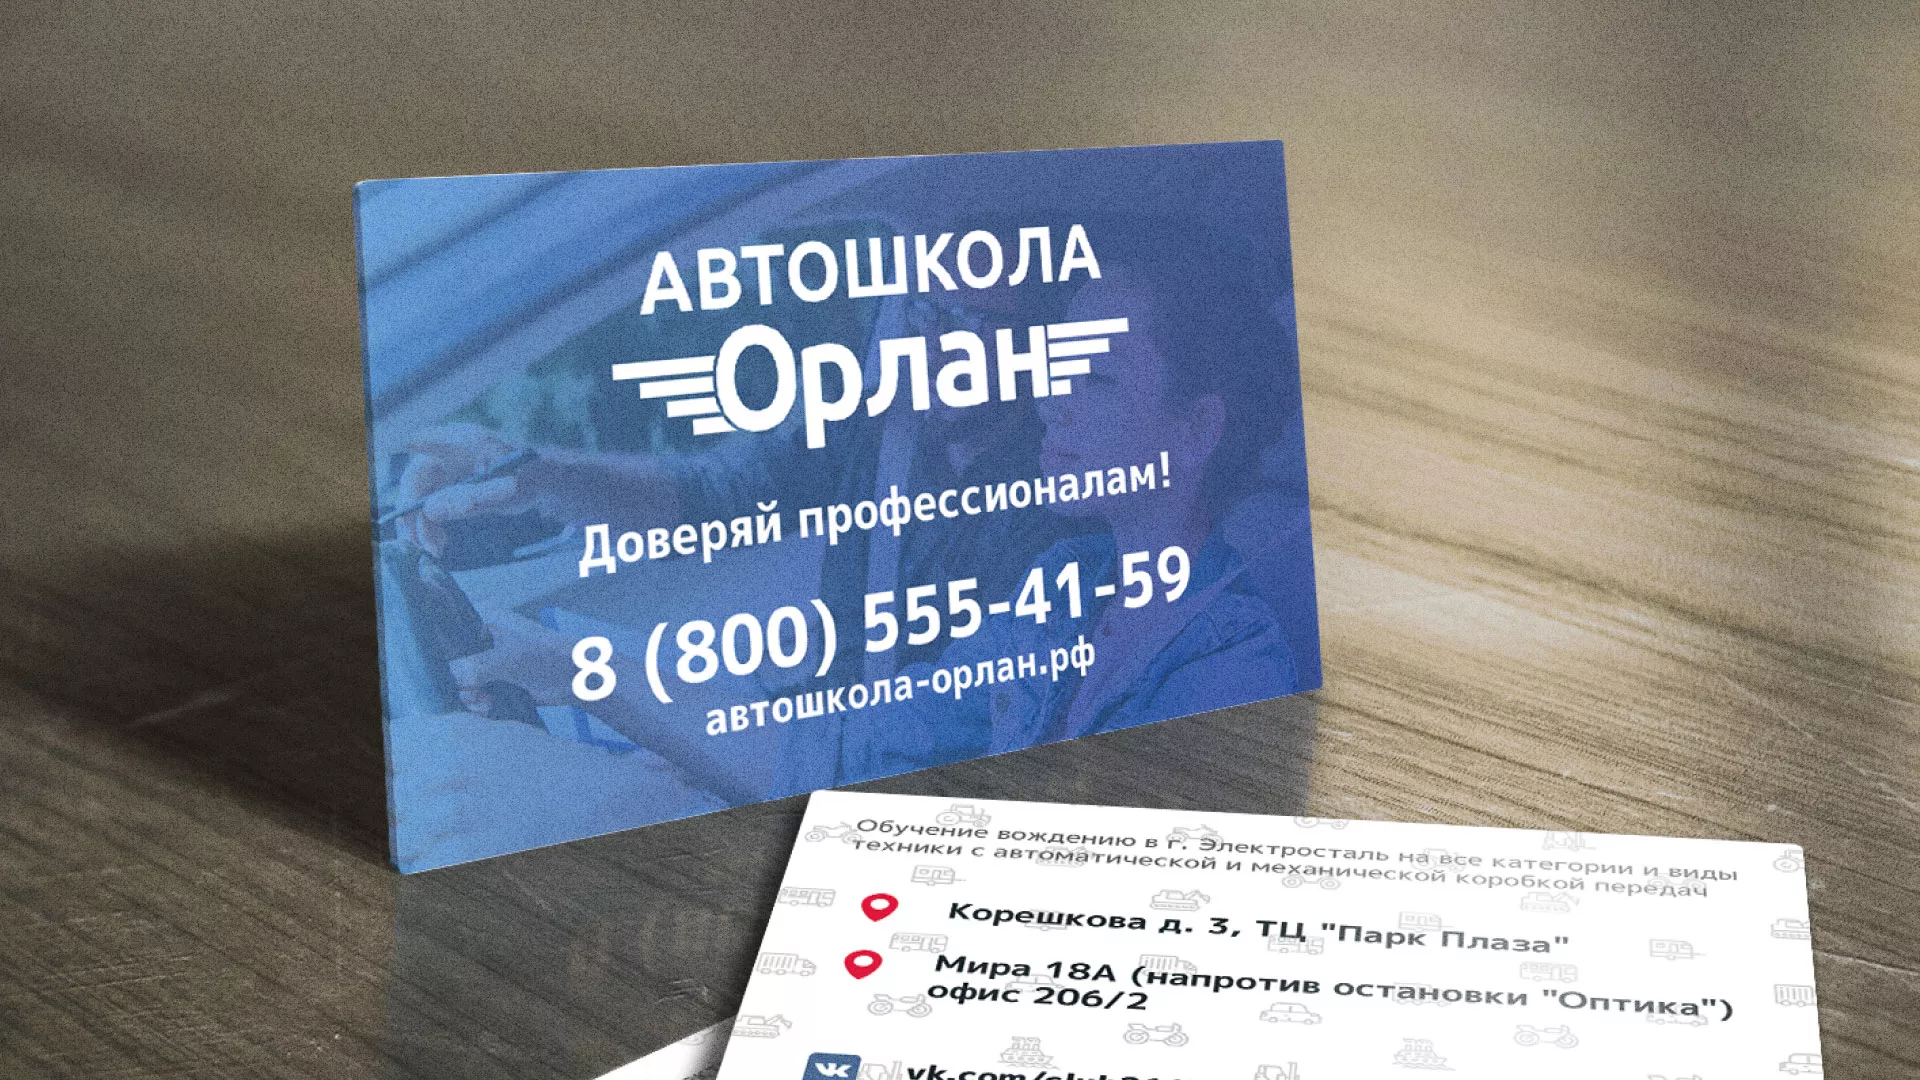 Дизайн рекламных визиток для автошколы «Орлан» в Абакане